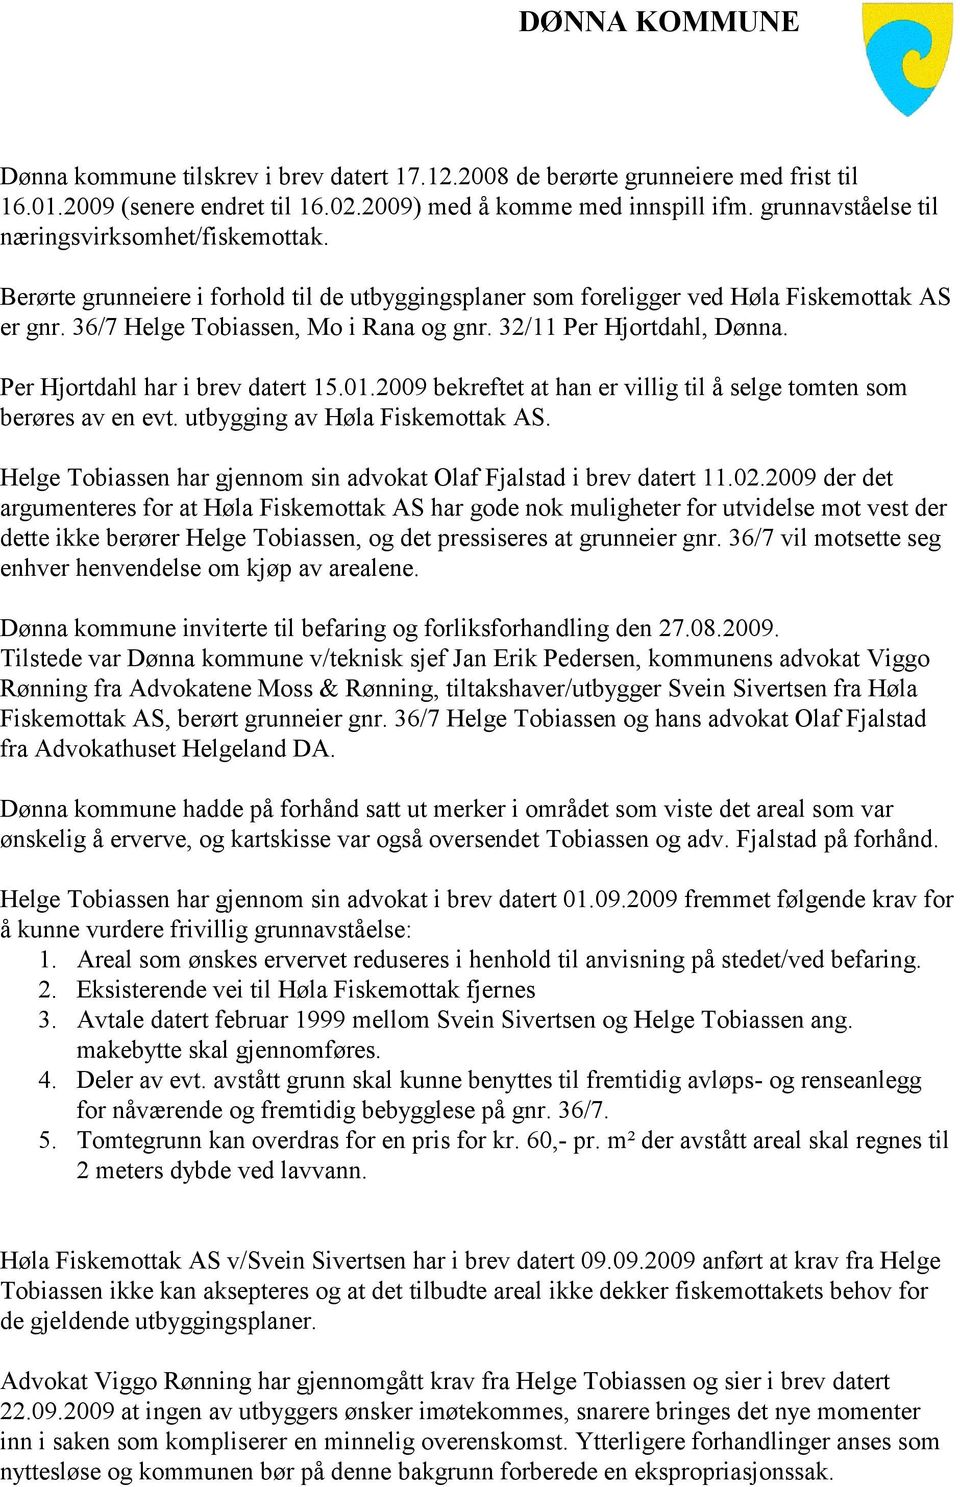 32/11 Per Hjortdahl, Dønna. Per Hjortdahl har i brev datert 15.01.2009 bekreftet at han er villig til å selge tomten som berøres av en evt. utbygging av Høla Fiskemottak AS.